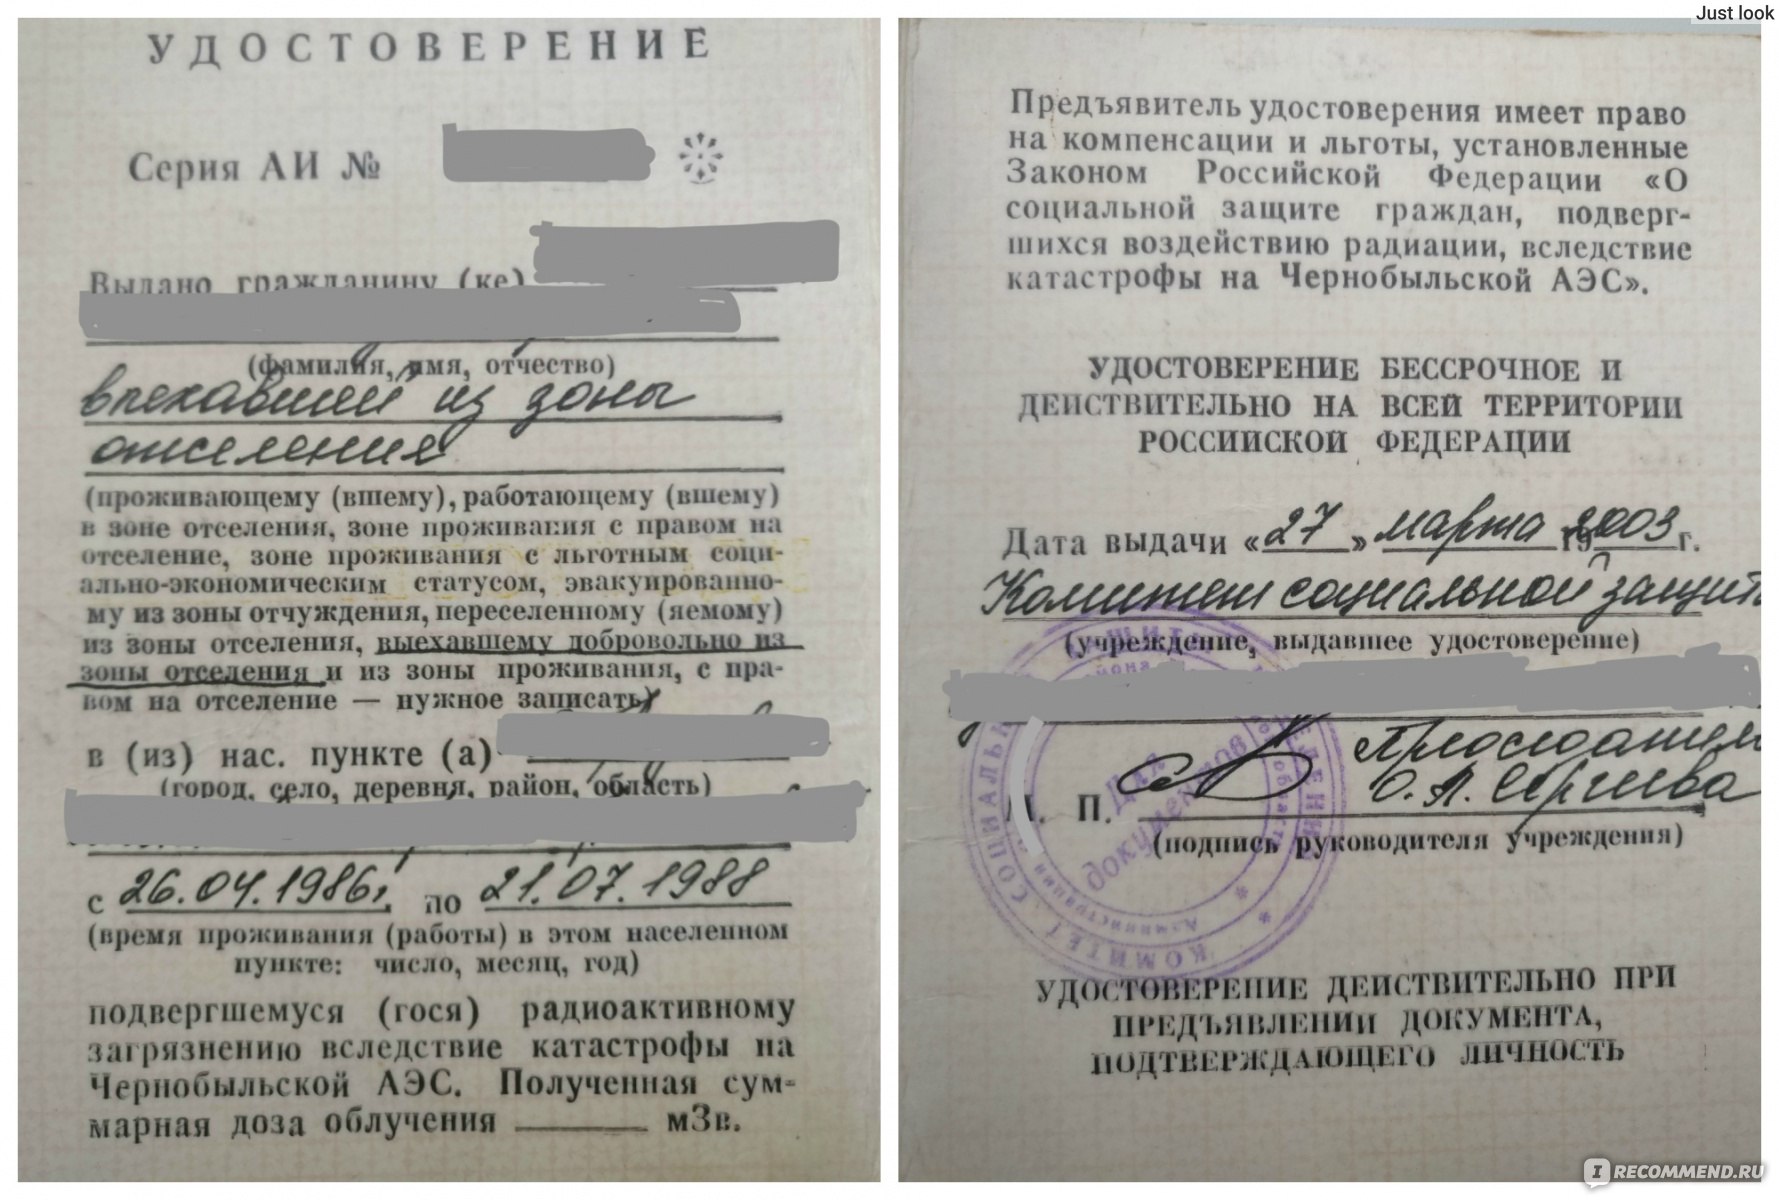 Проживания с правом на отселение. Образец Чернобыльского удостоверения.